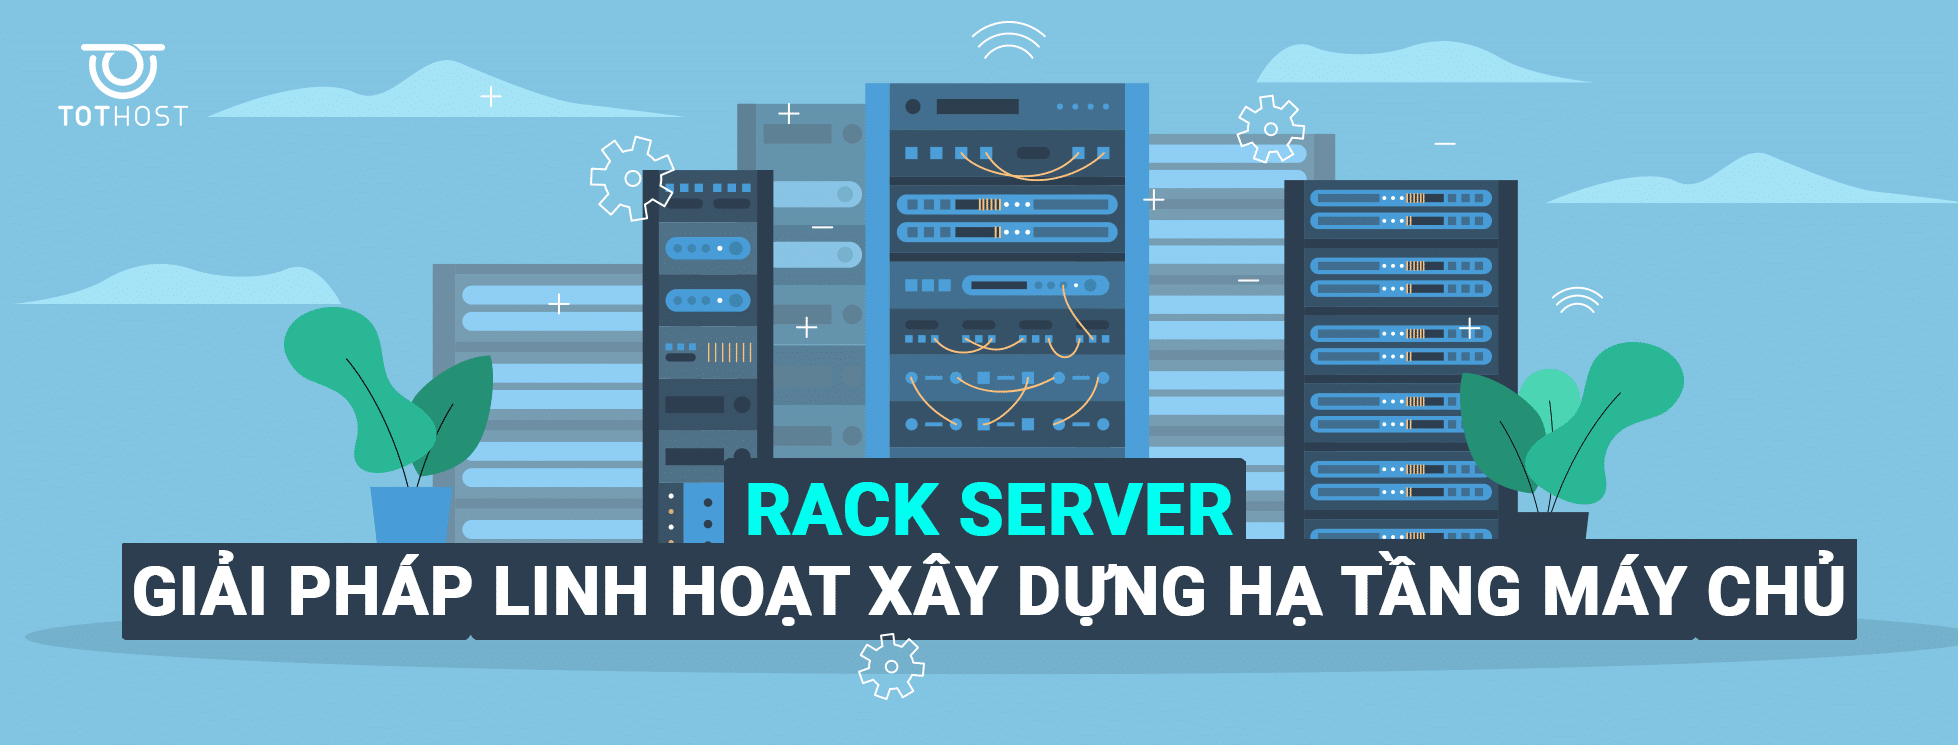 Rack Server là gì? Cách lựa chọn Server Rack phù hợp